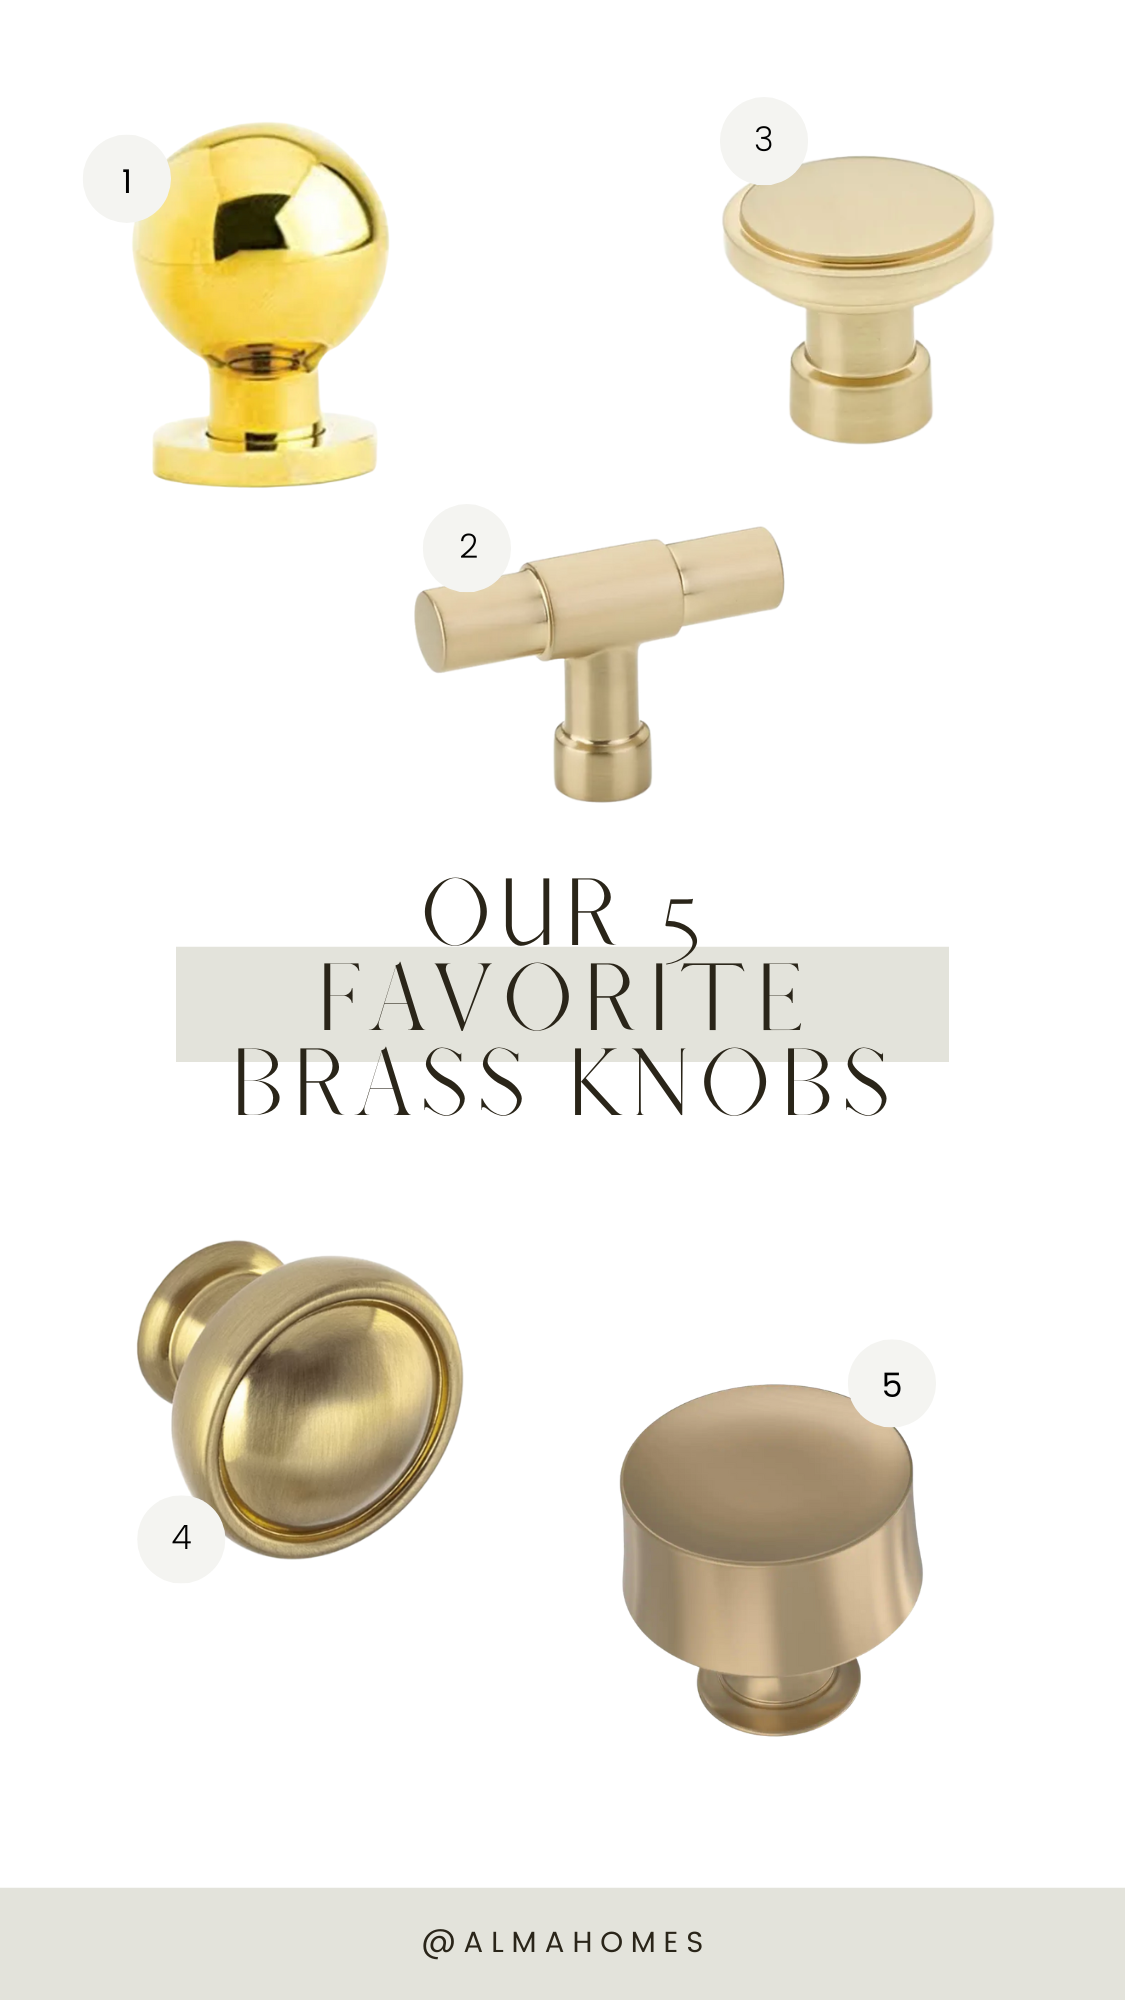 Five brass knobs